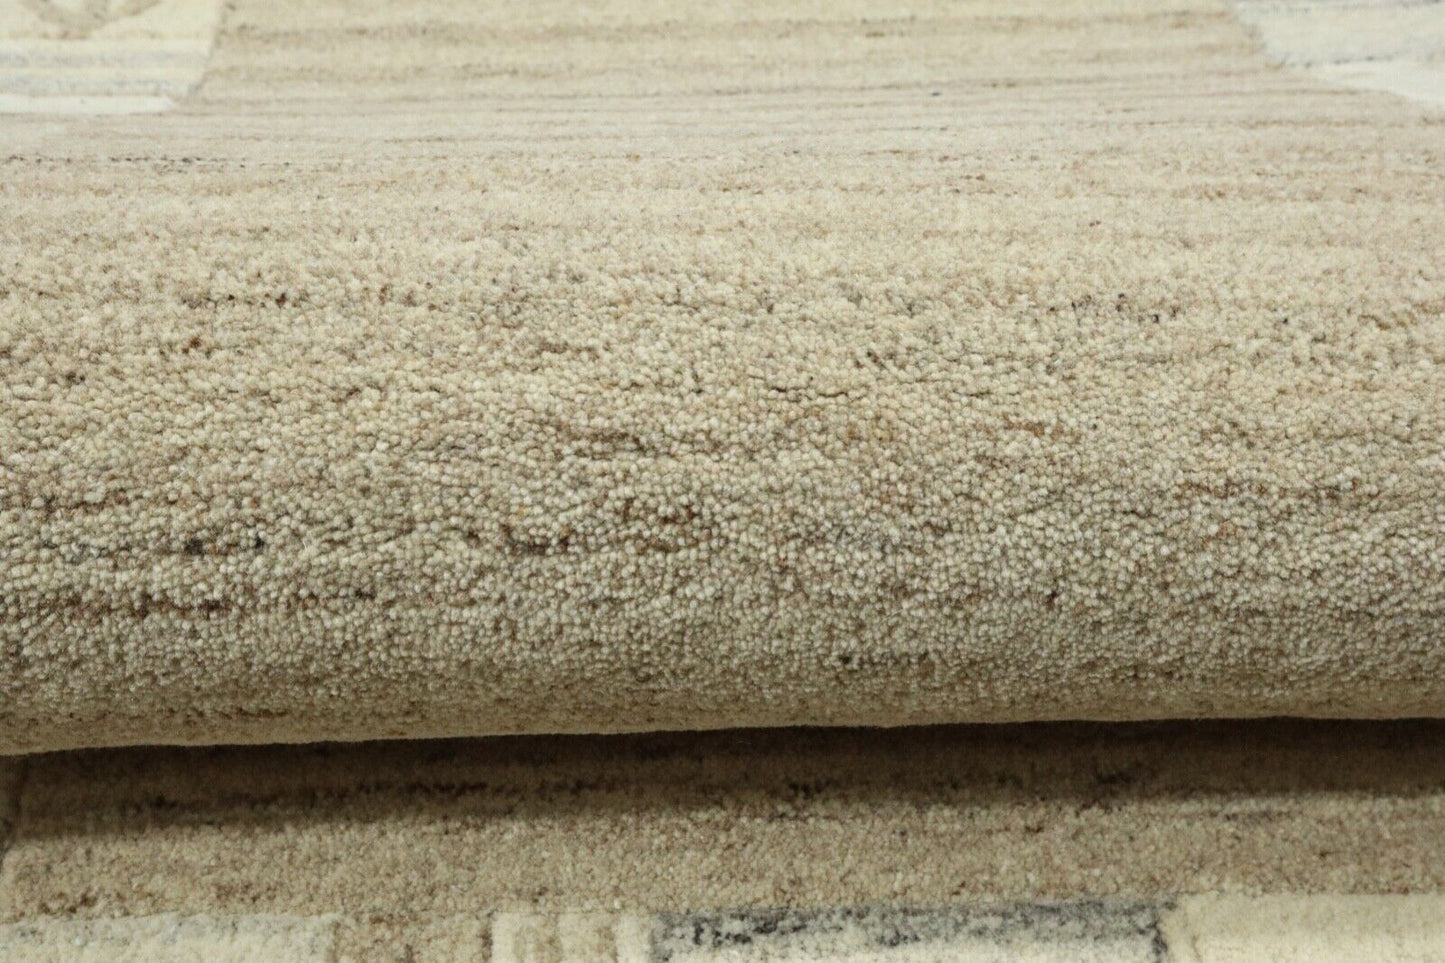 Gabbeh Teppich 100% Wolle 70X140 cm Handarbeit Braun Beige Handgetuftet T1011